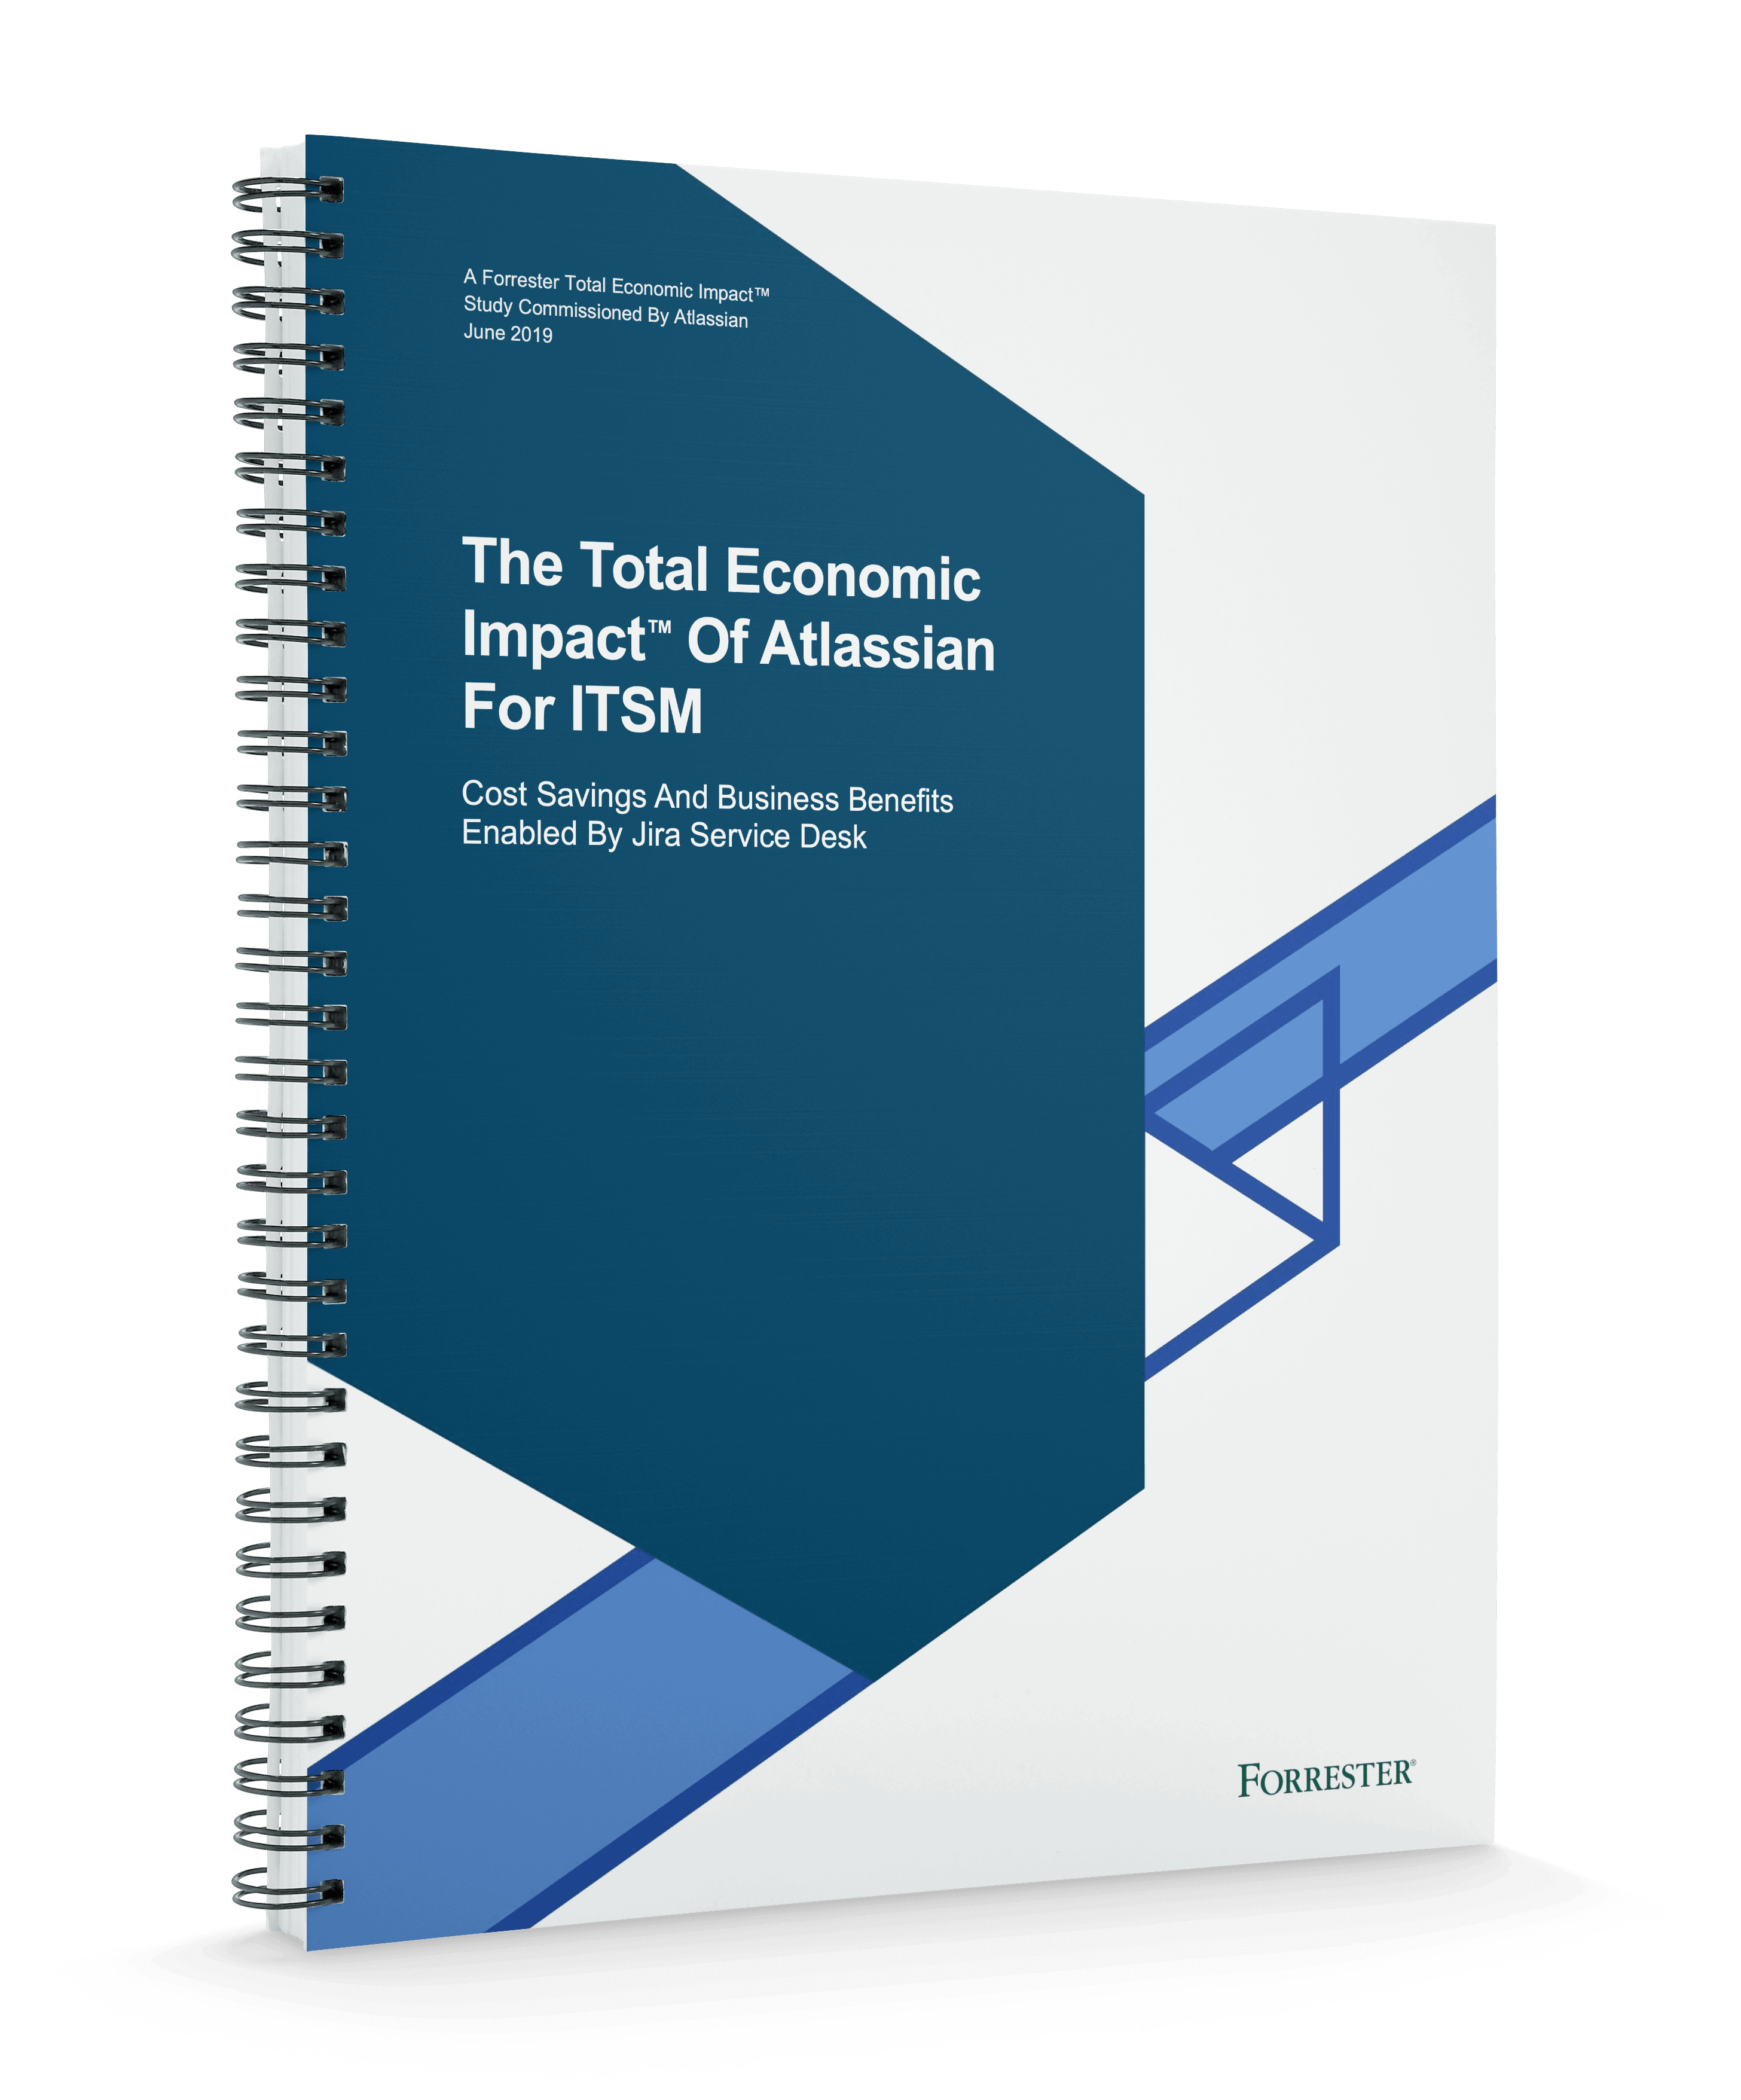 Forrester の『Total Economic Impact™ Of Atlassian For ITSM (ITSM でのアトラシアンの総経済効果)』